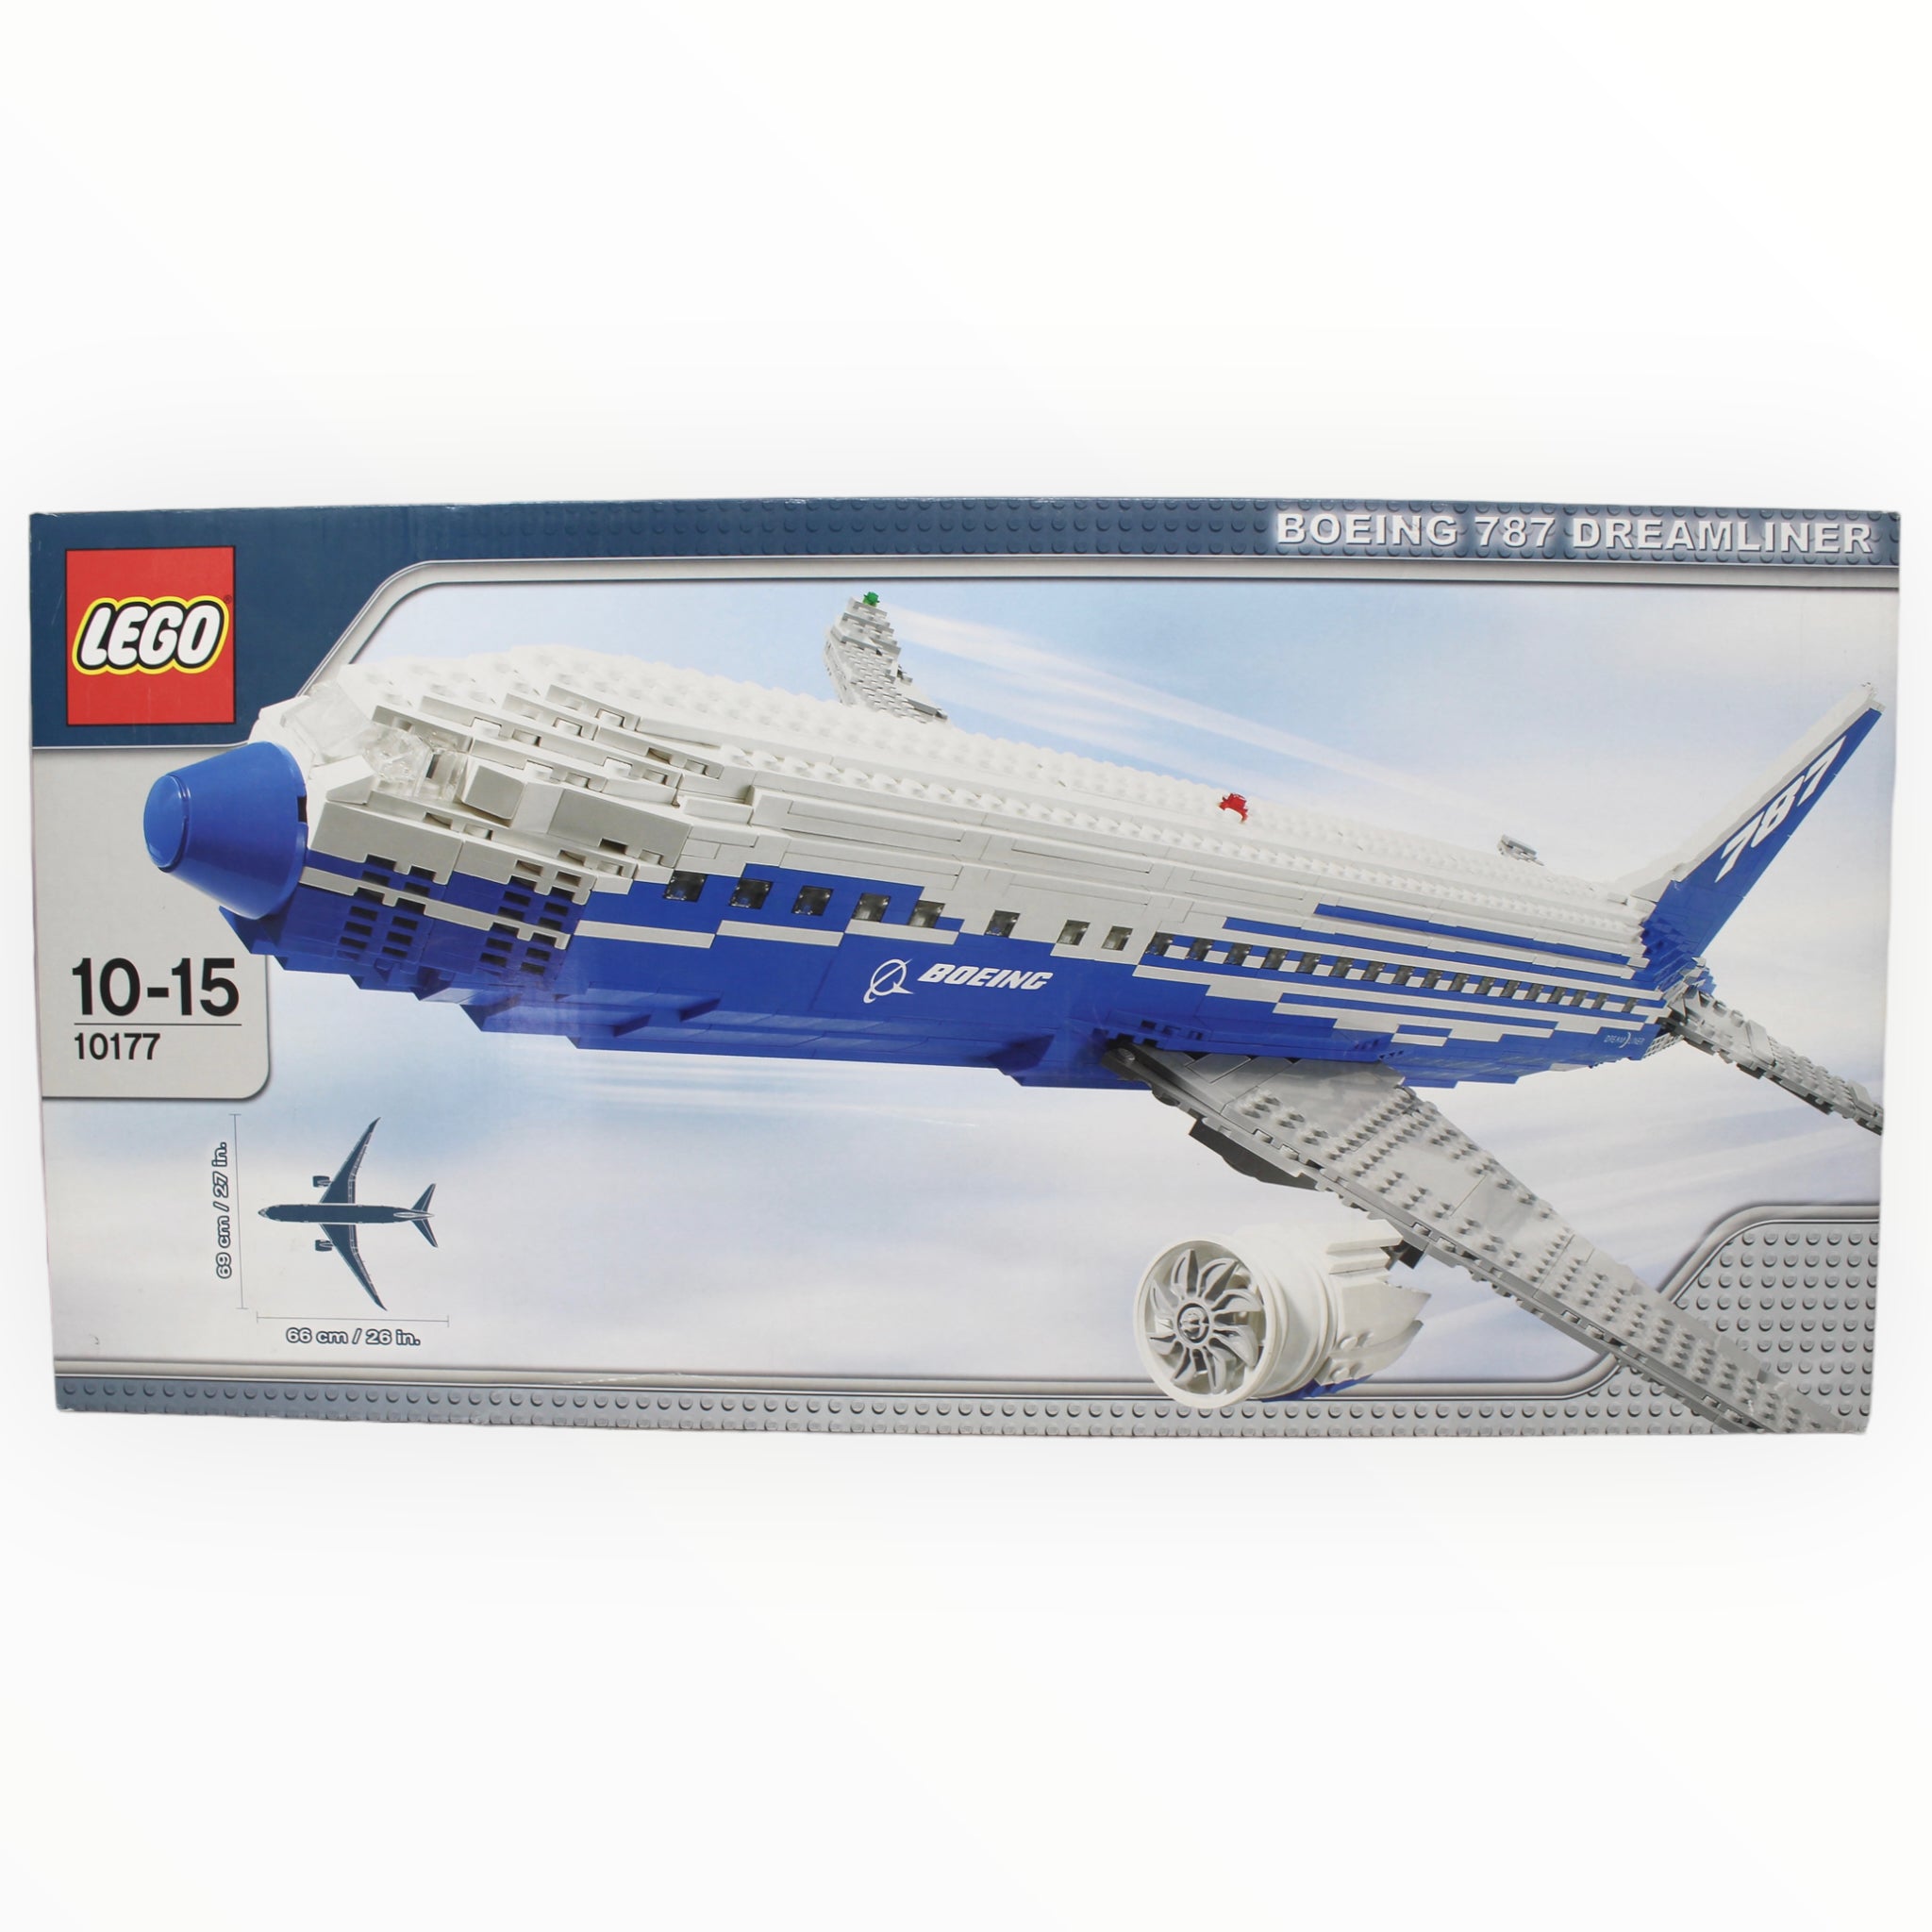 Retired Set 10177 LEGO Boeing 787 Dreamliner